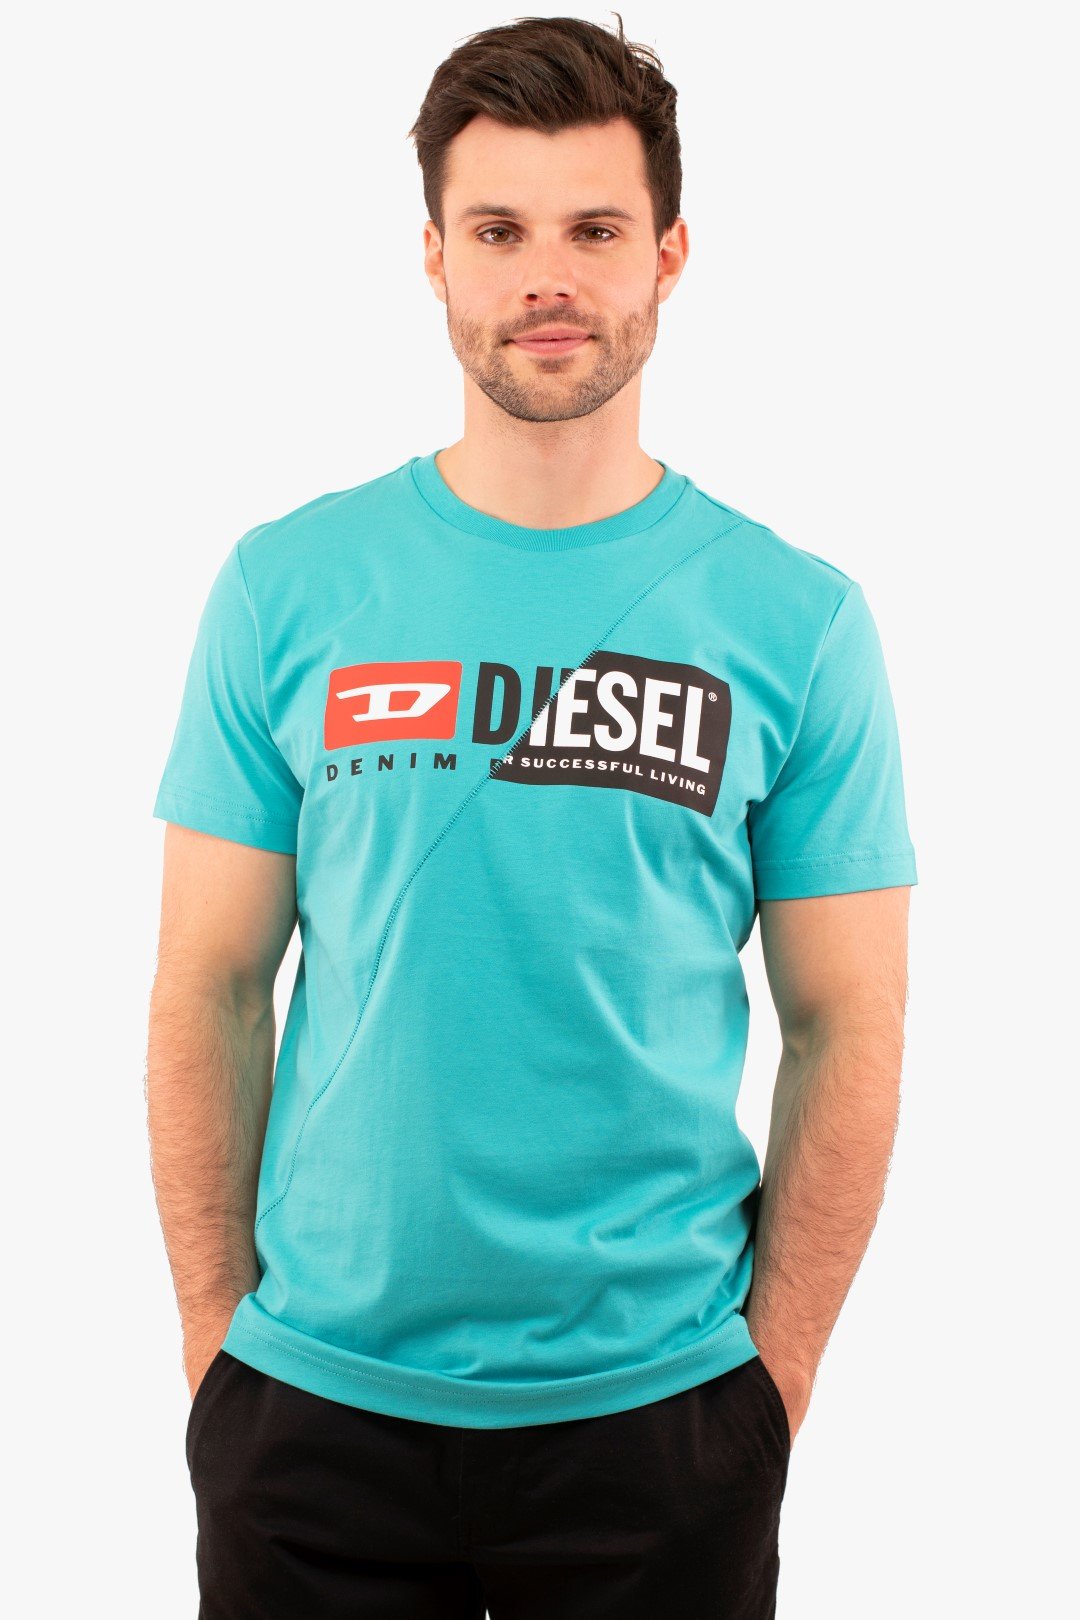 T-Shirt Diego Cuty Diesel De Couleur Aqua (Dies-0091A-00Sdp1) Maillot